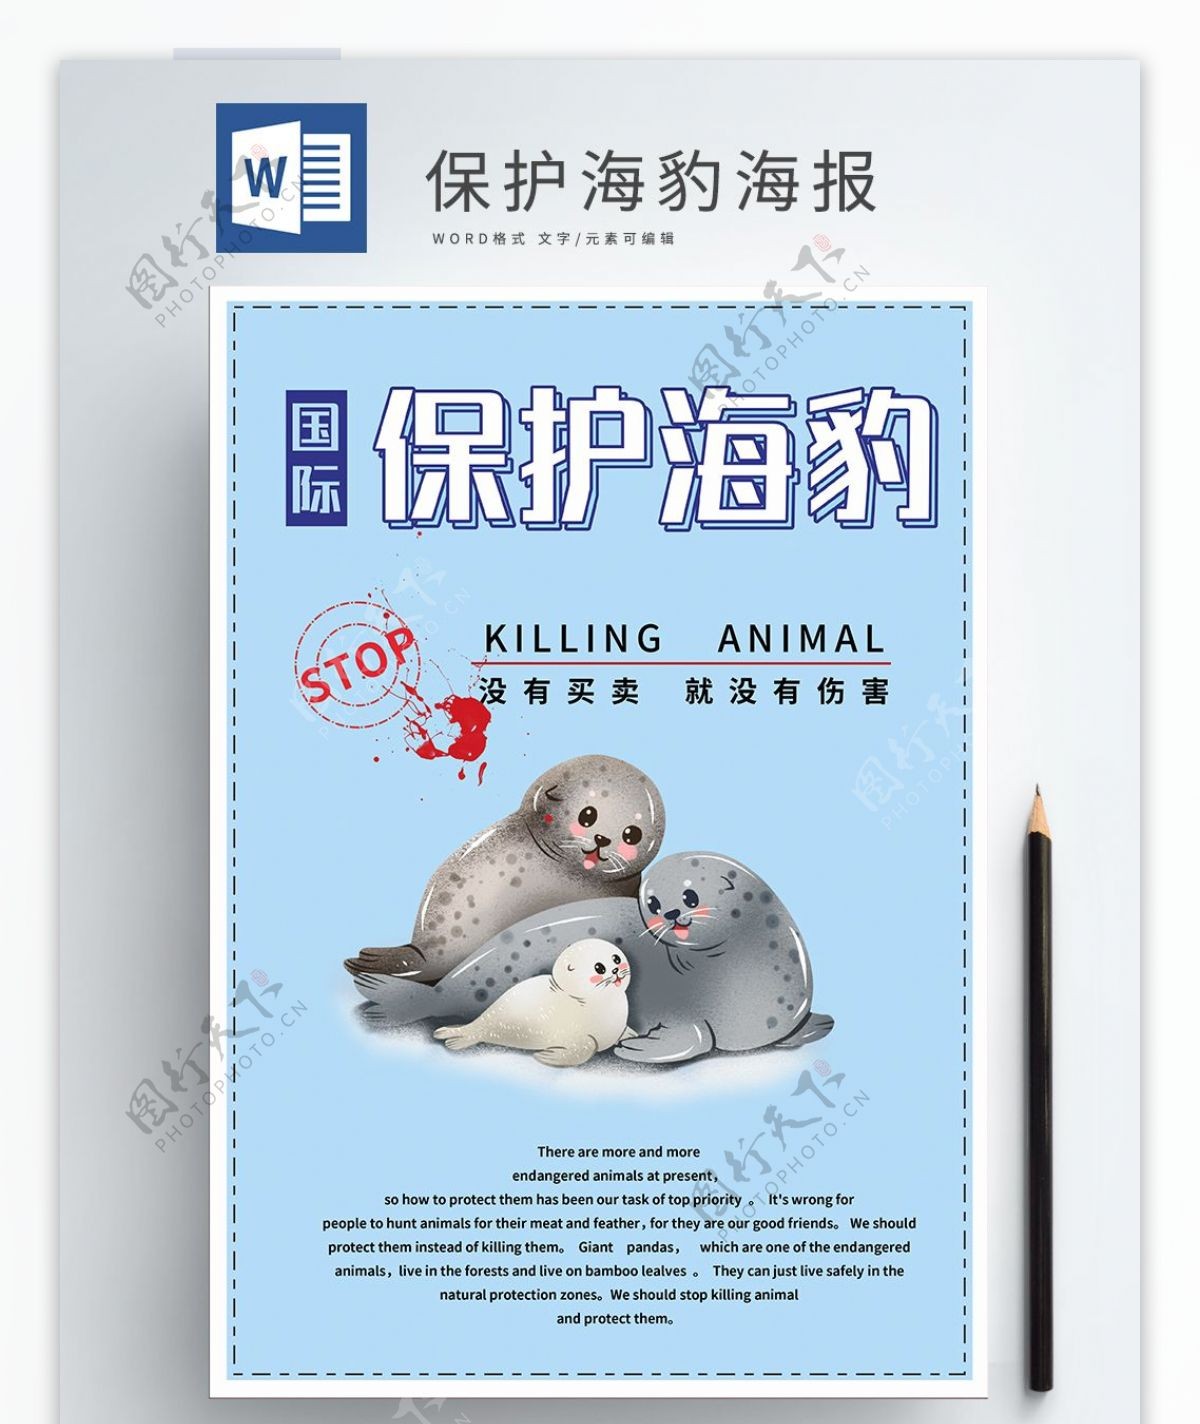 保护海豹国际海豹节公益海报